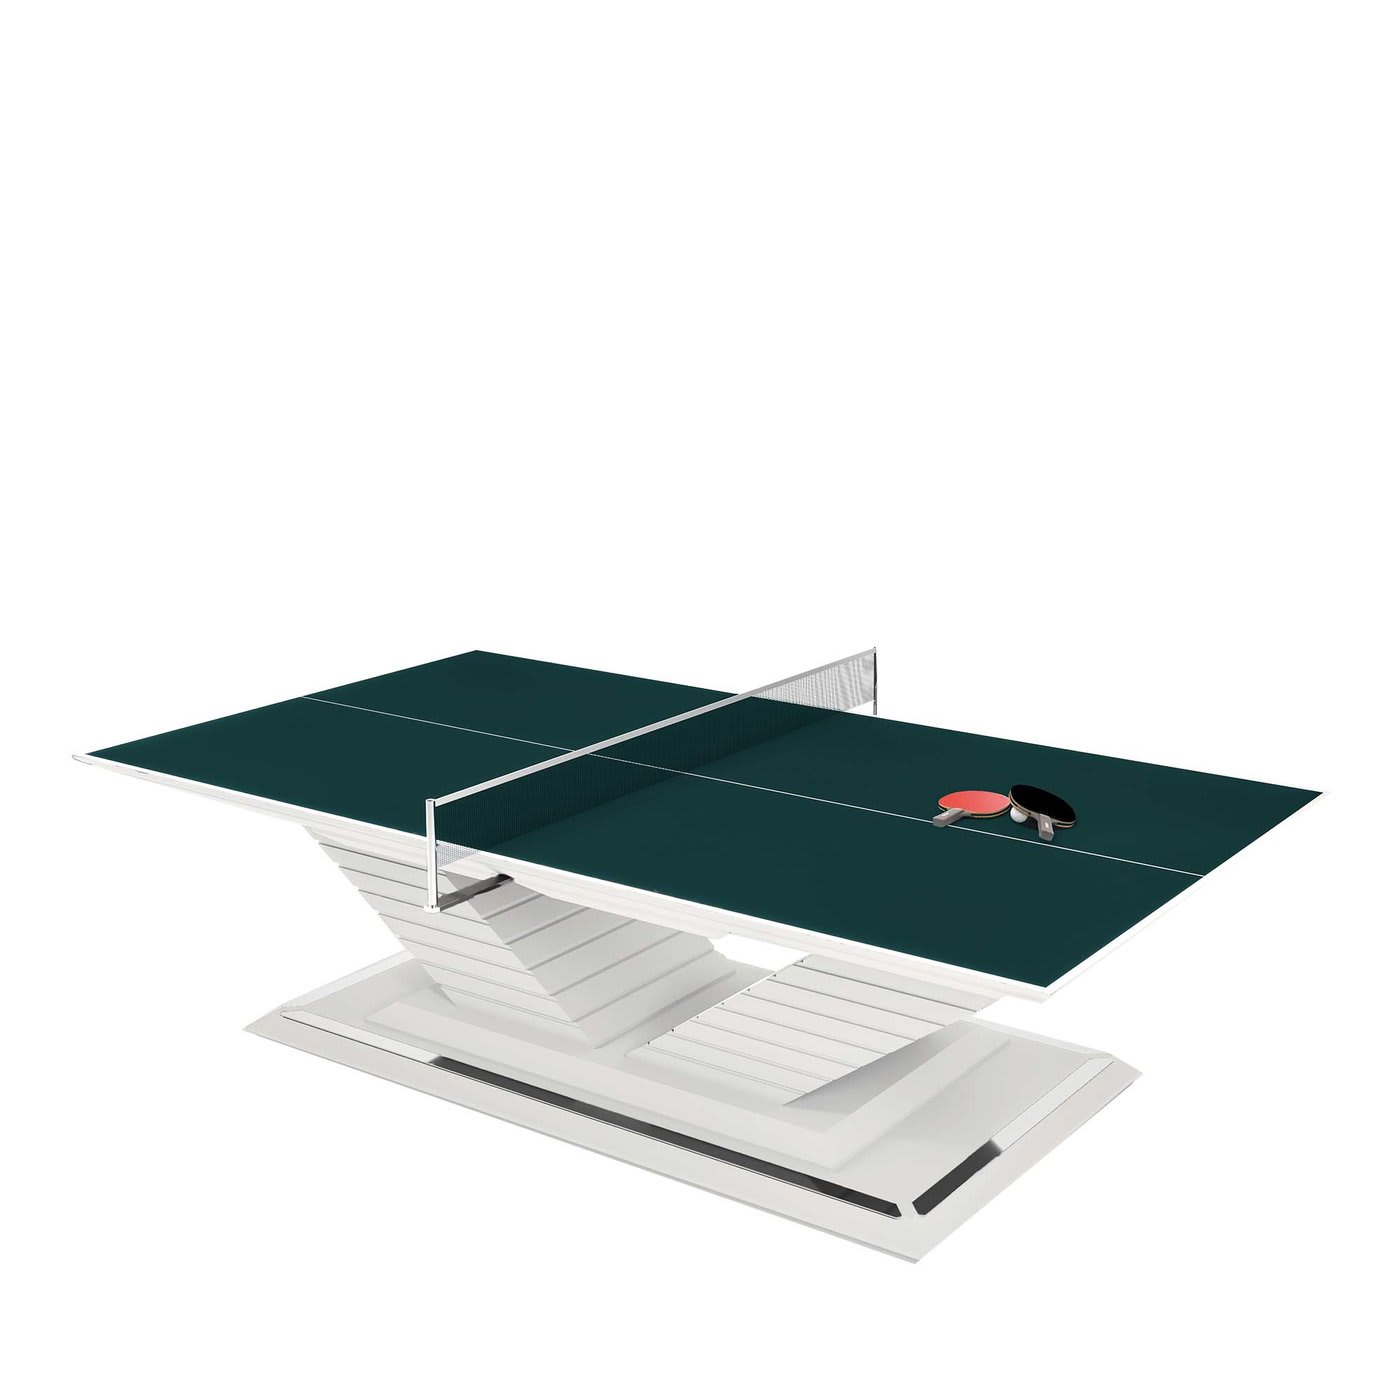 Arena Ping Pong table by Pino Vismara - Vismara